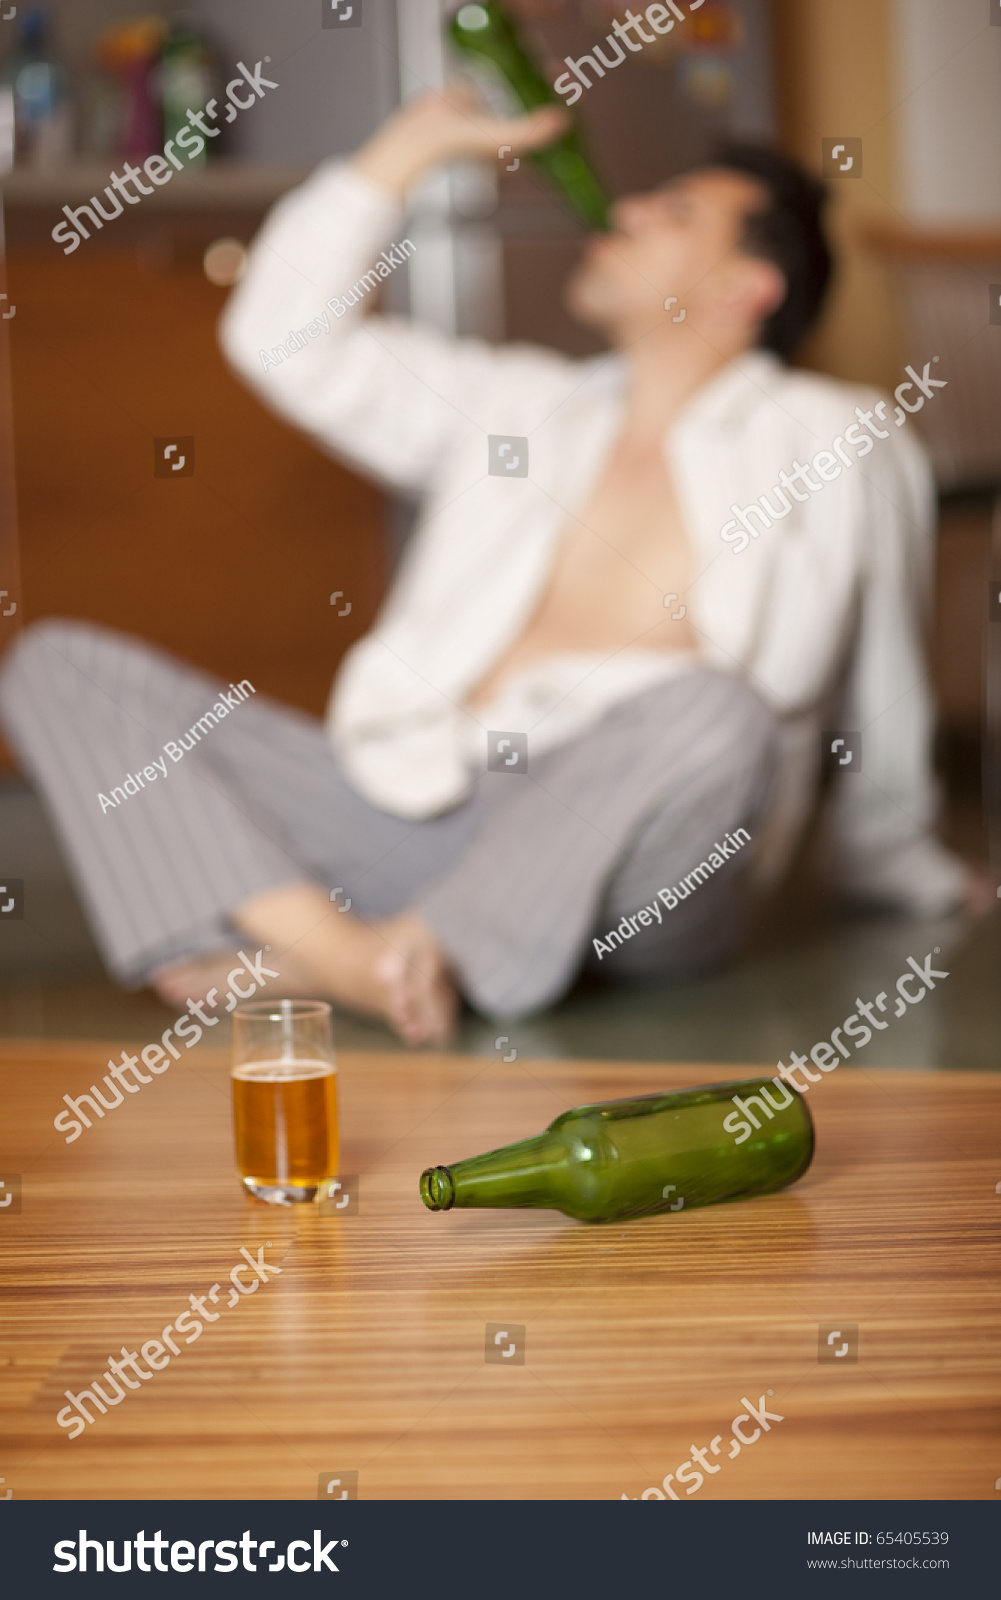 Drunkard. Man Drinking A Beer. Focus On Bottle Stock Photo 65405539 ...